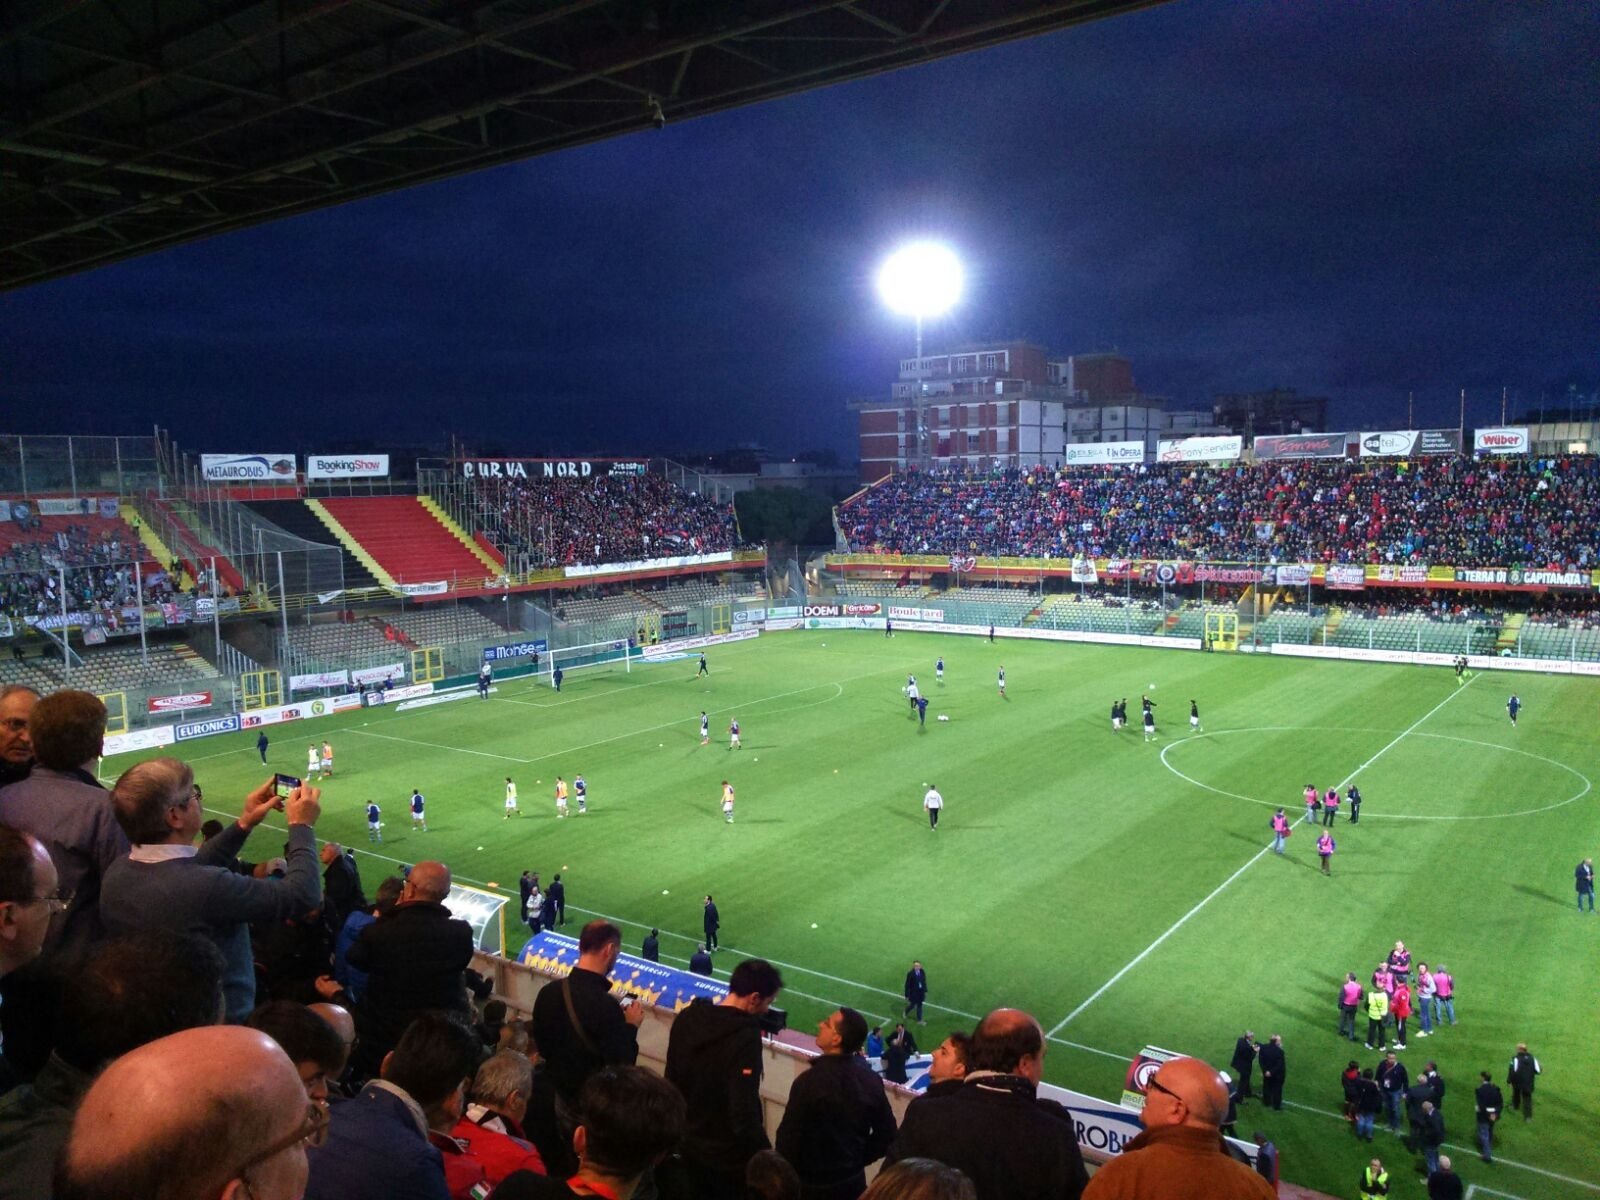 FINALE Foggia-Alessandria 2-0 (Sarno, Iemmello) Rivivi il live della partita